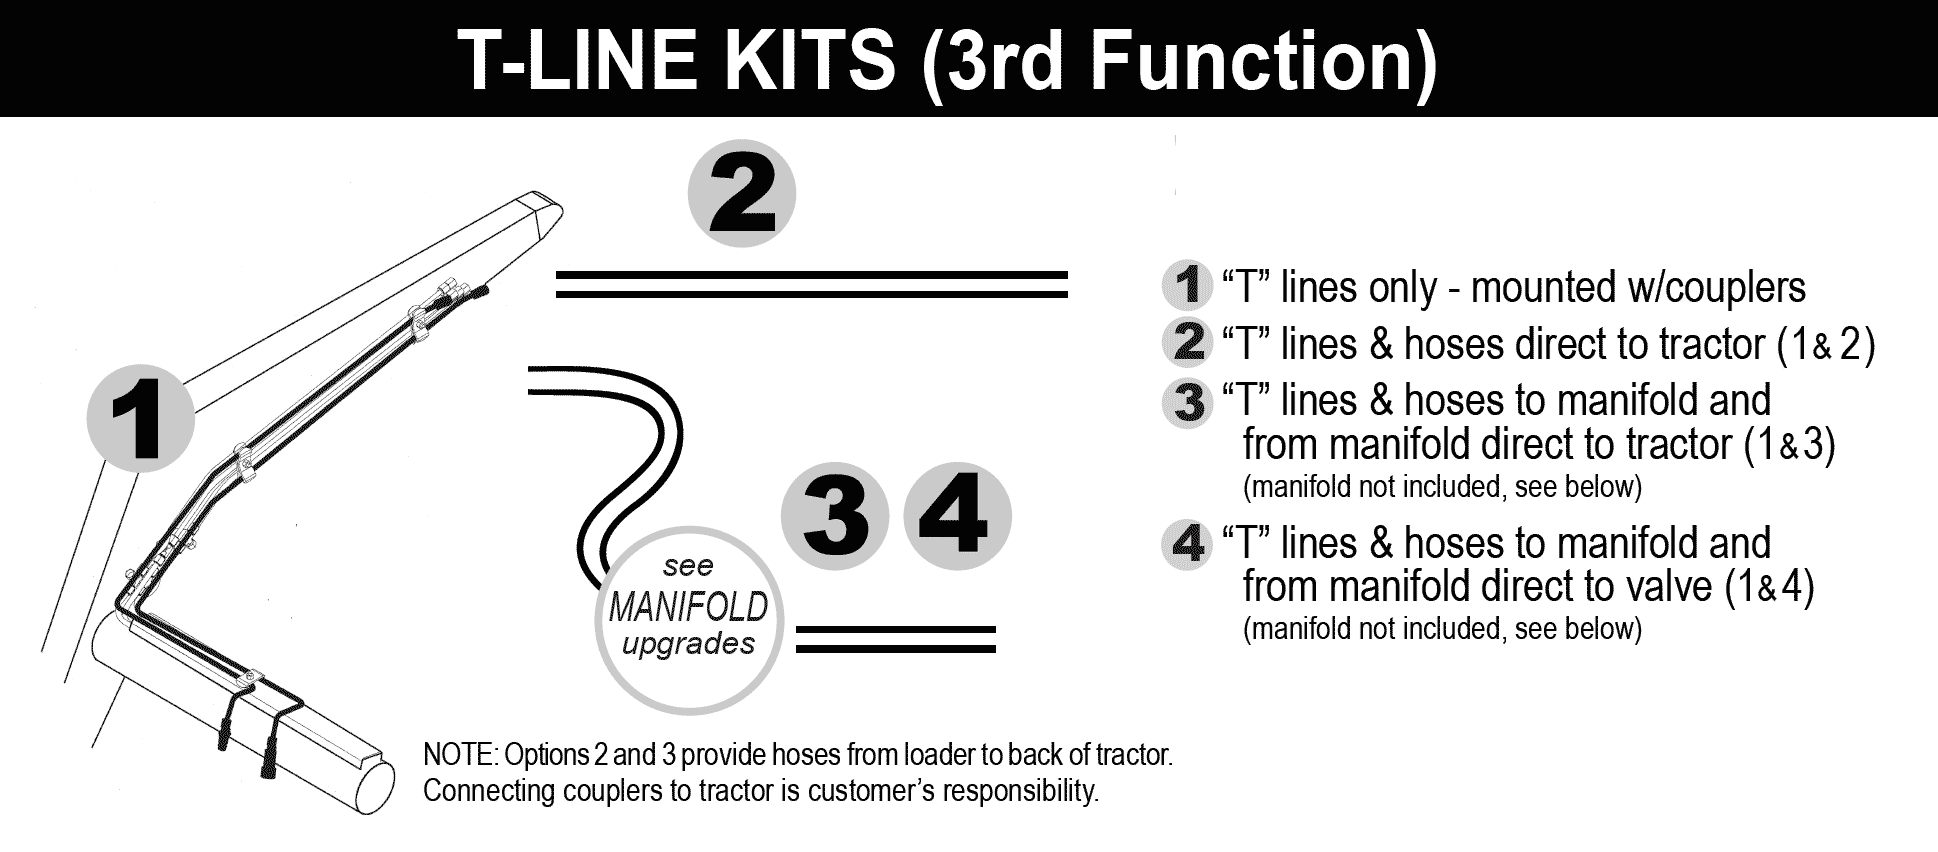 T-Line Kits